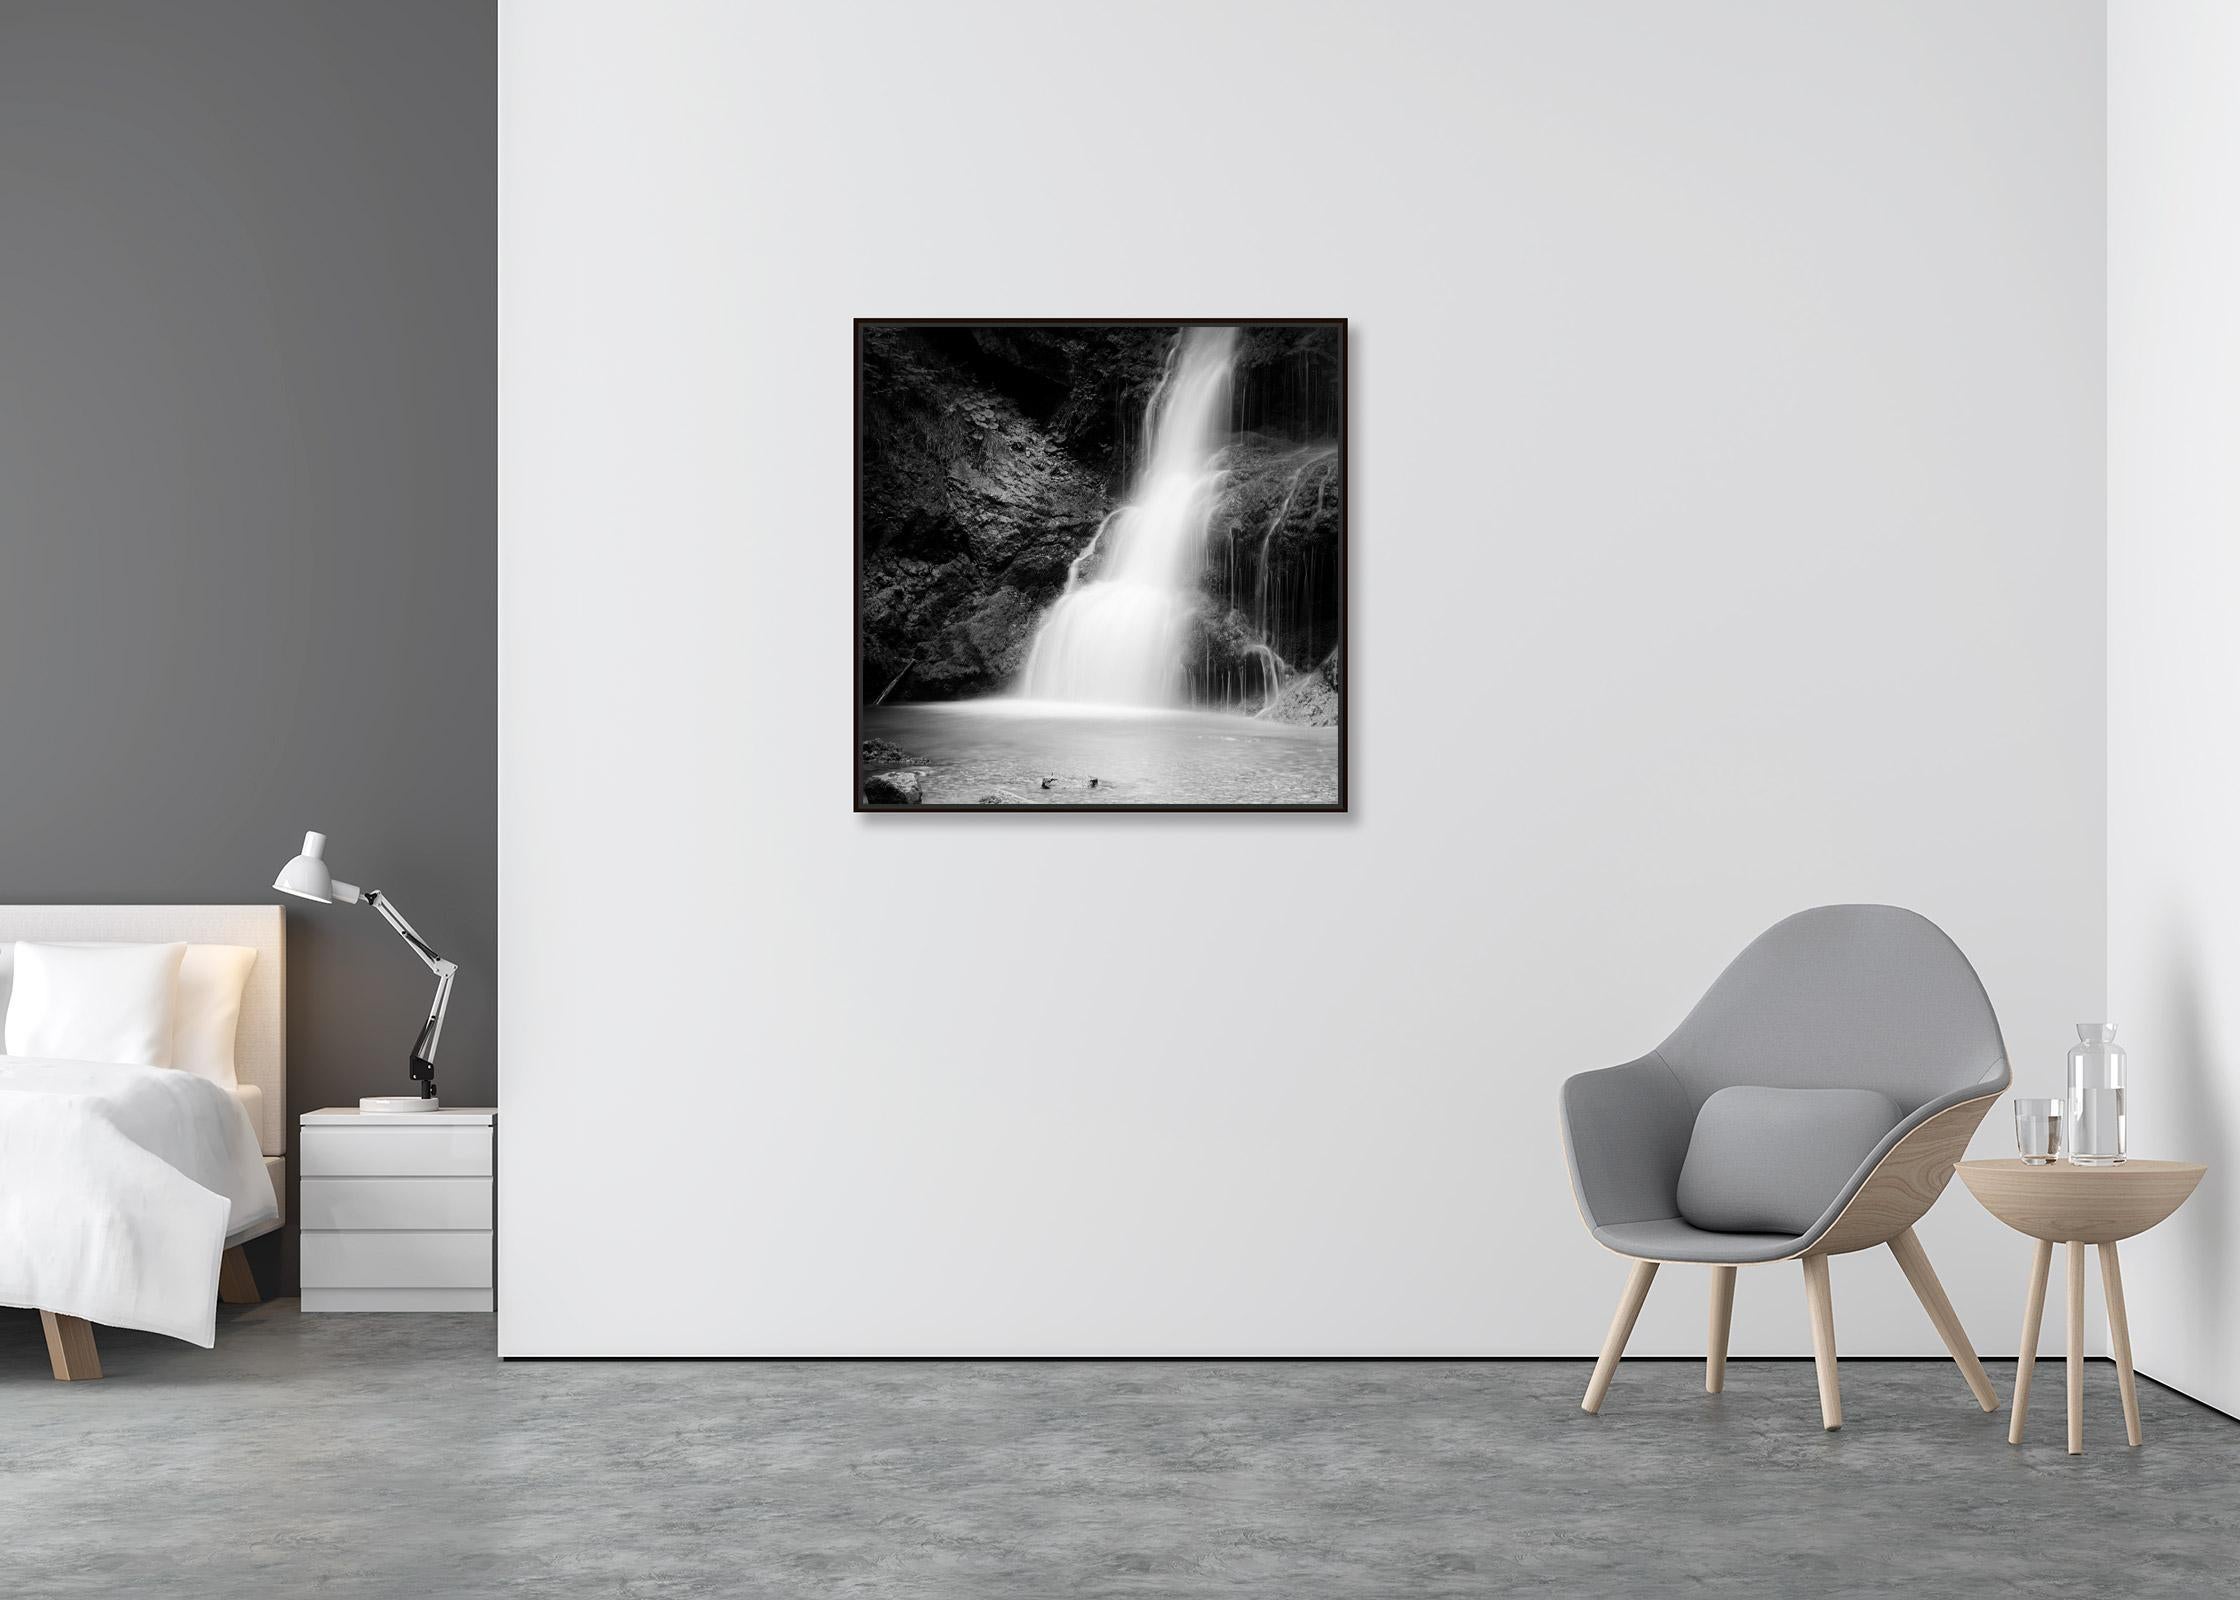 Wasserfall, Bayern, Deutschland, Schwarz-Weiß-Landschaftsfotografie mit Langzeitbelichtung (Zeitgenössisch), Photograph, von Gerald Berghammer